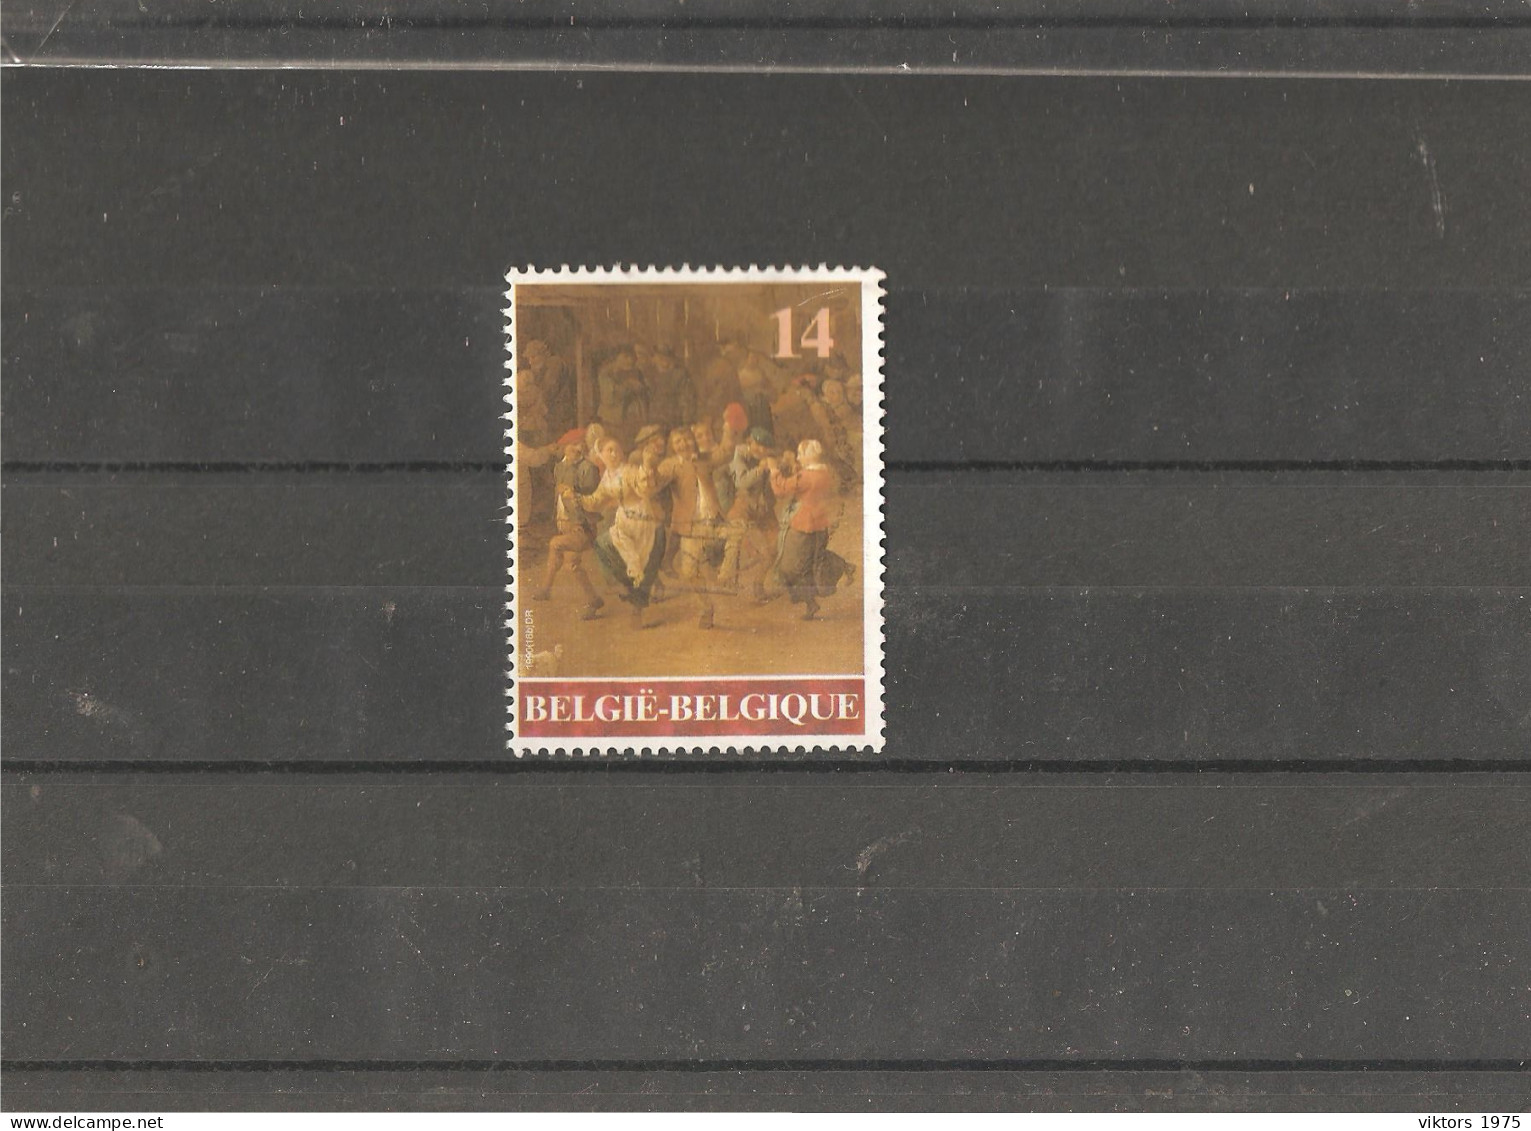 Used Stamp Nr.2446 In MICHEL Catalog - Usati